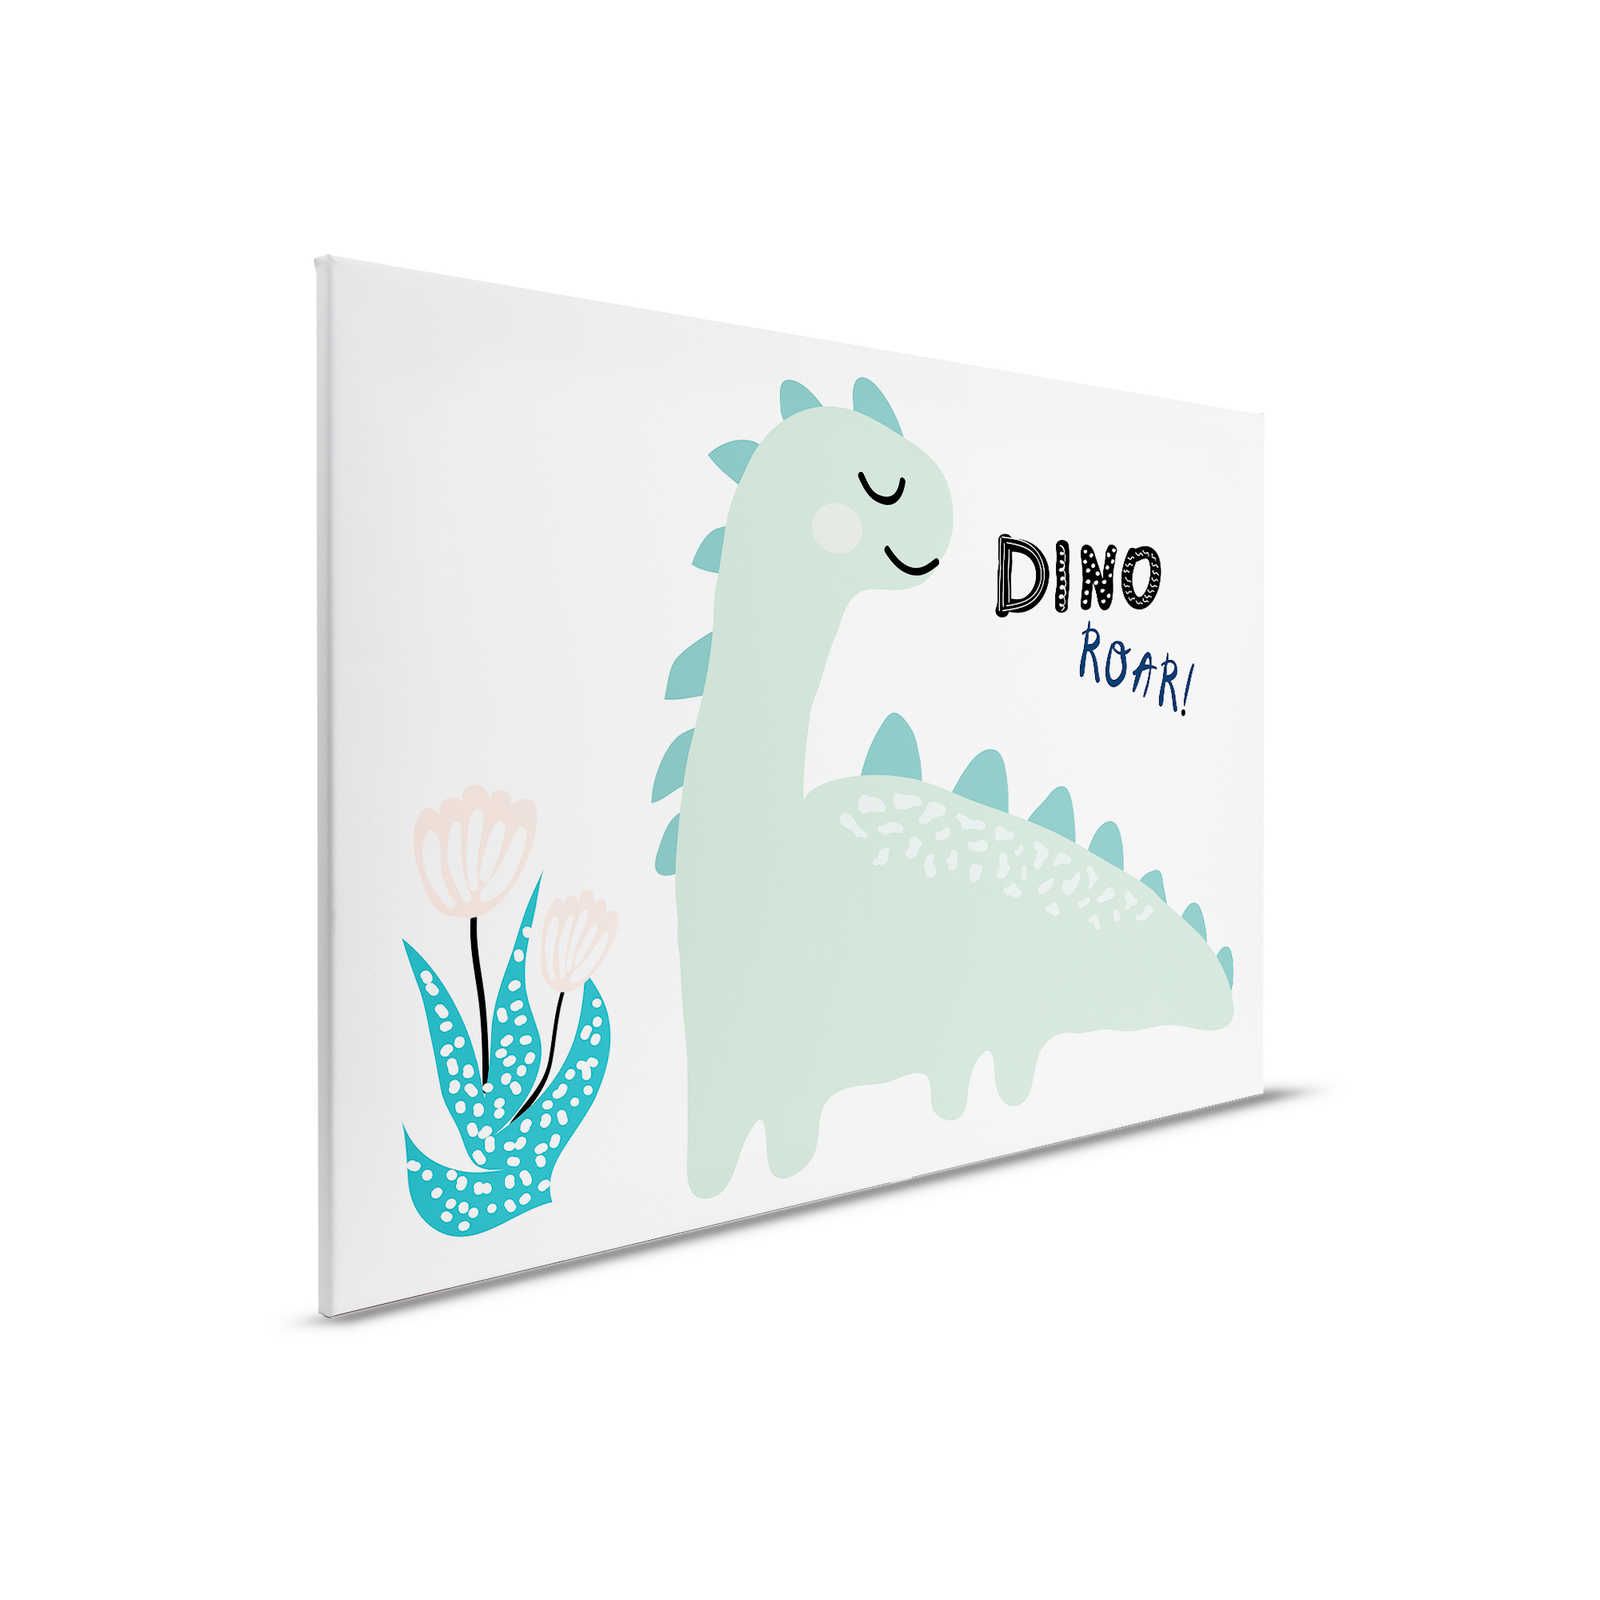 Leinwand mit gemaltem Dinosaurier – 90 cm x 60 cm
